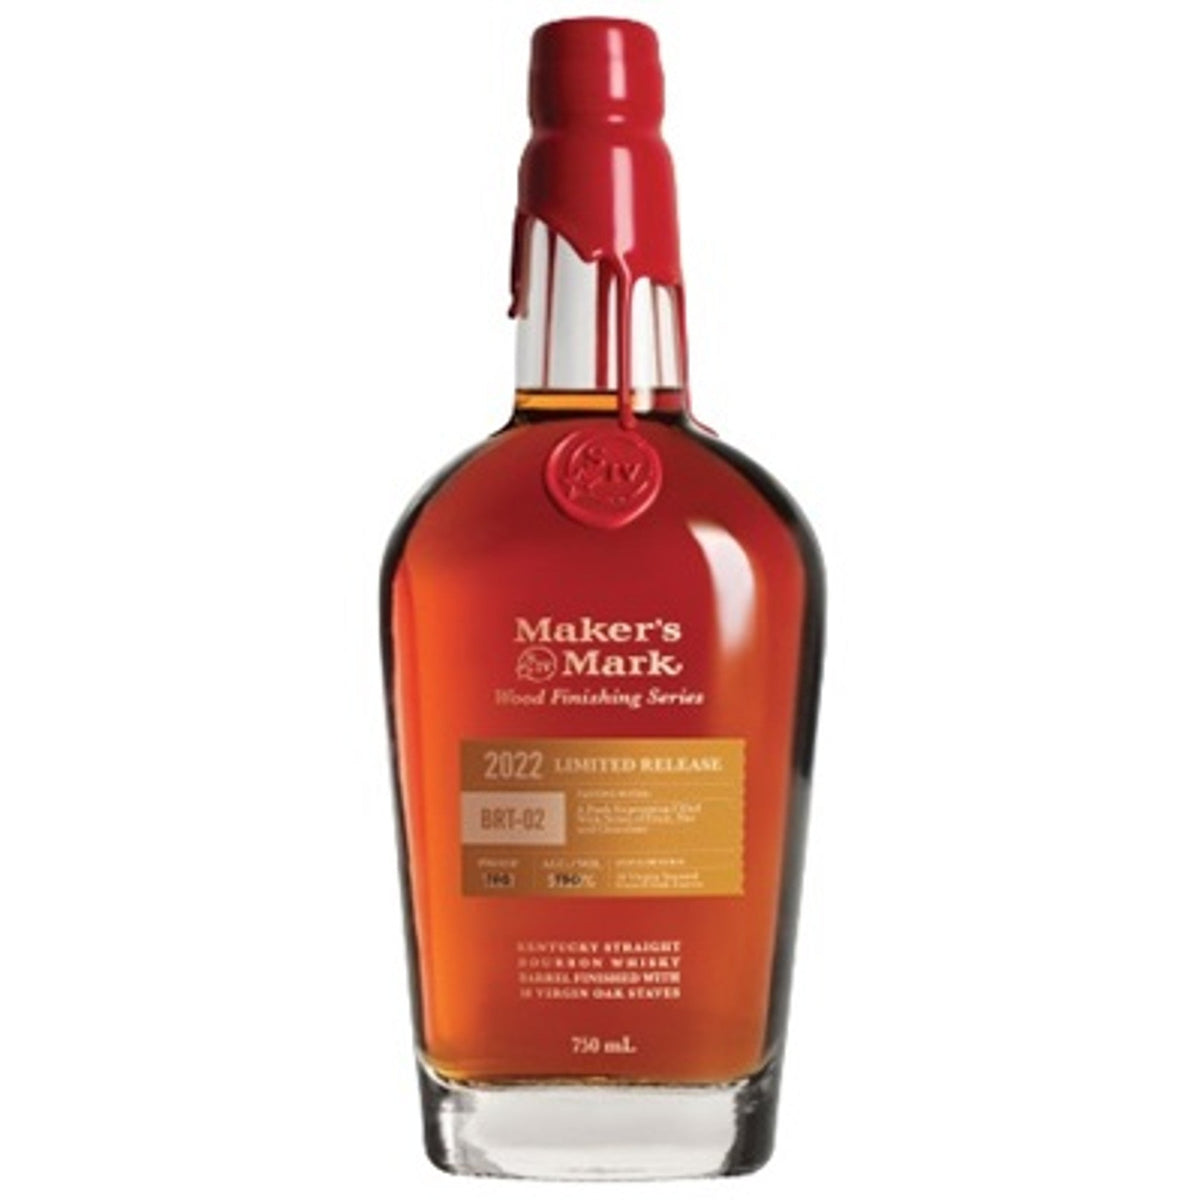 Maker's Mark 2022 BRT-02 Limited Release Kentucky Straight Bourbon Whisky (750ml)